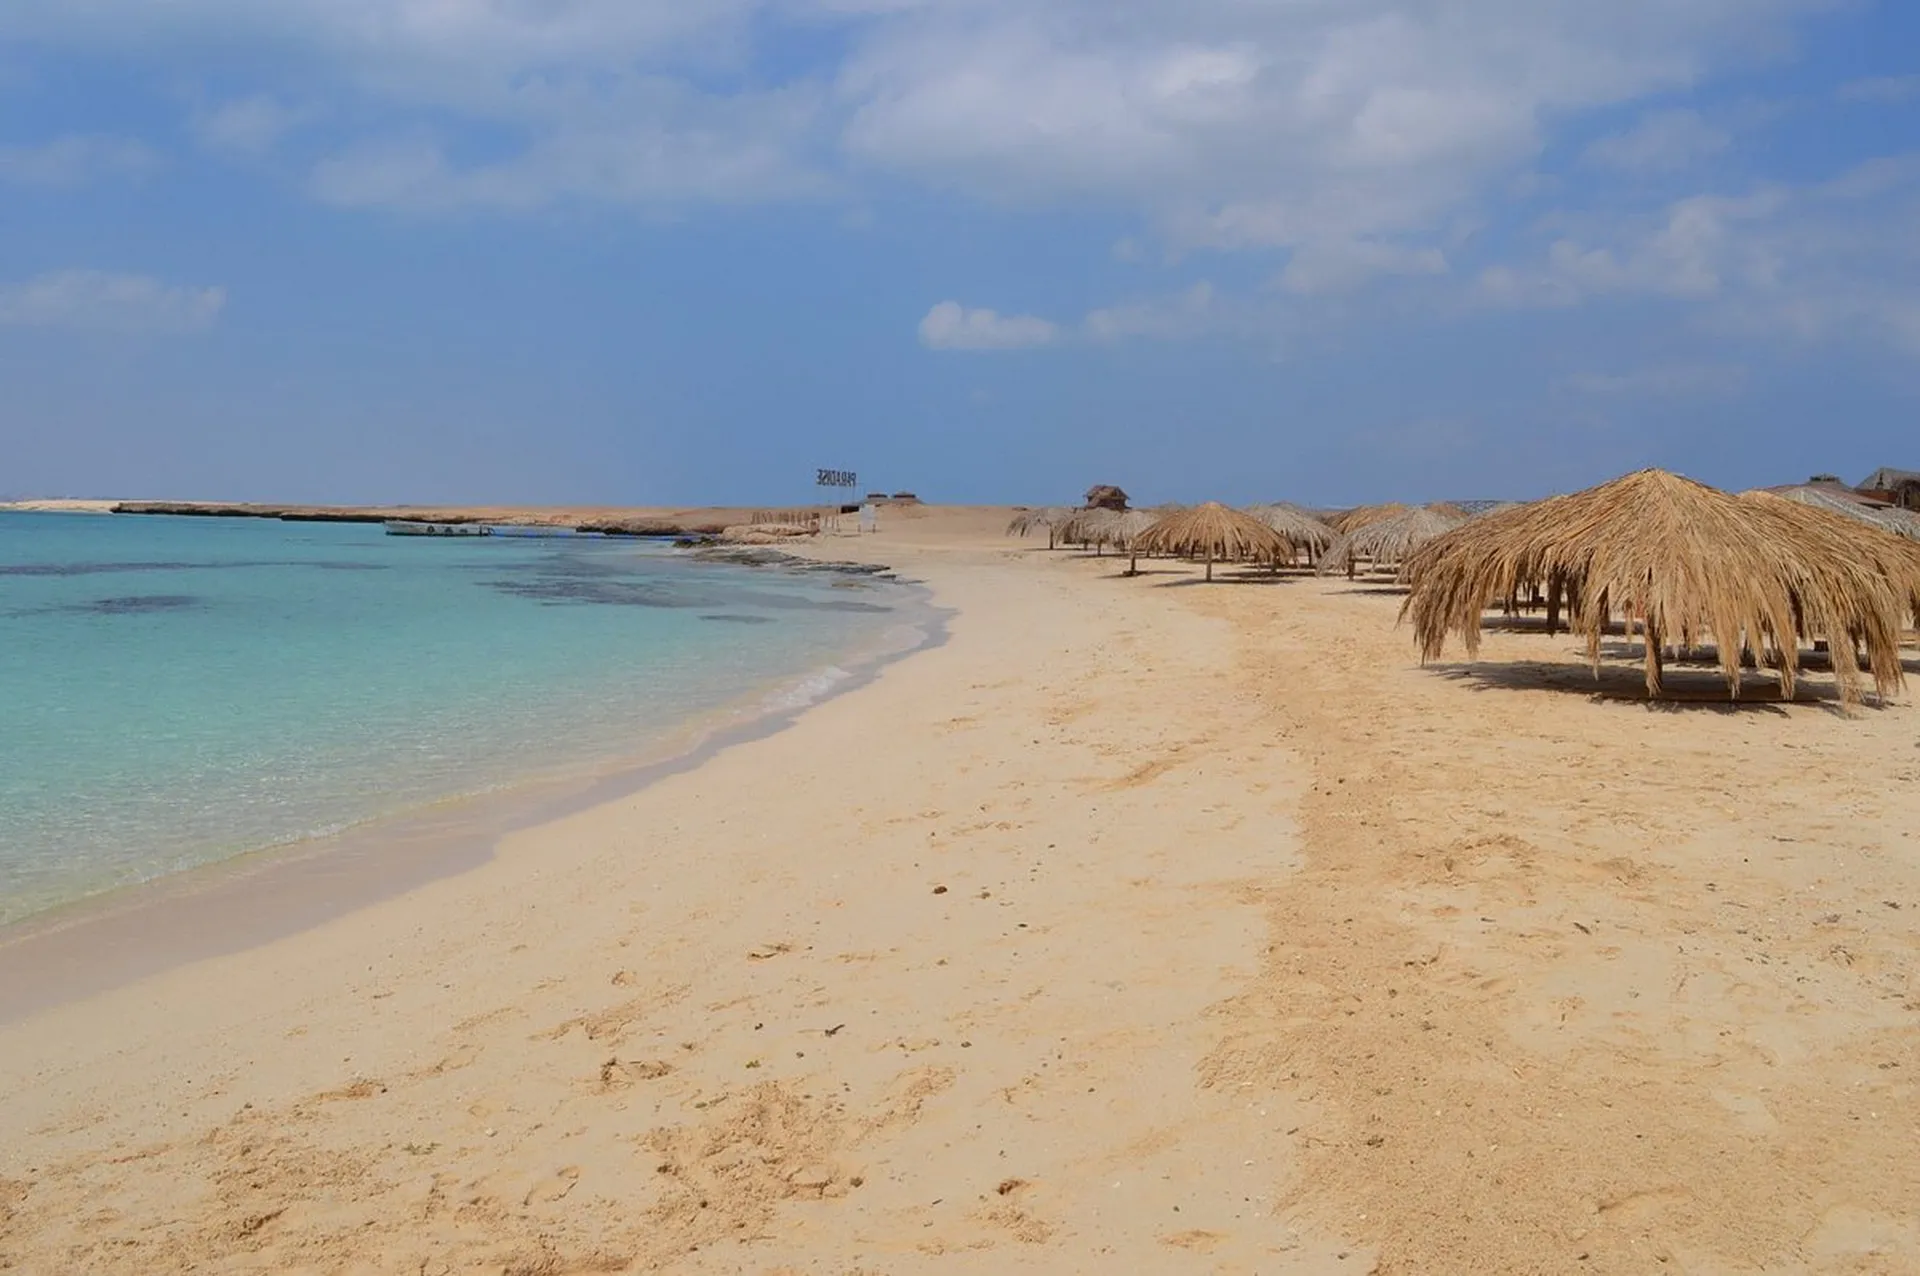 Explore Hurghada